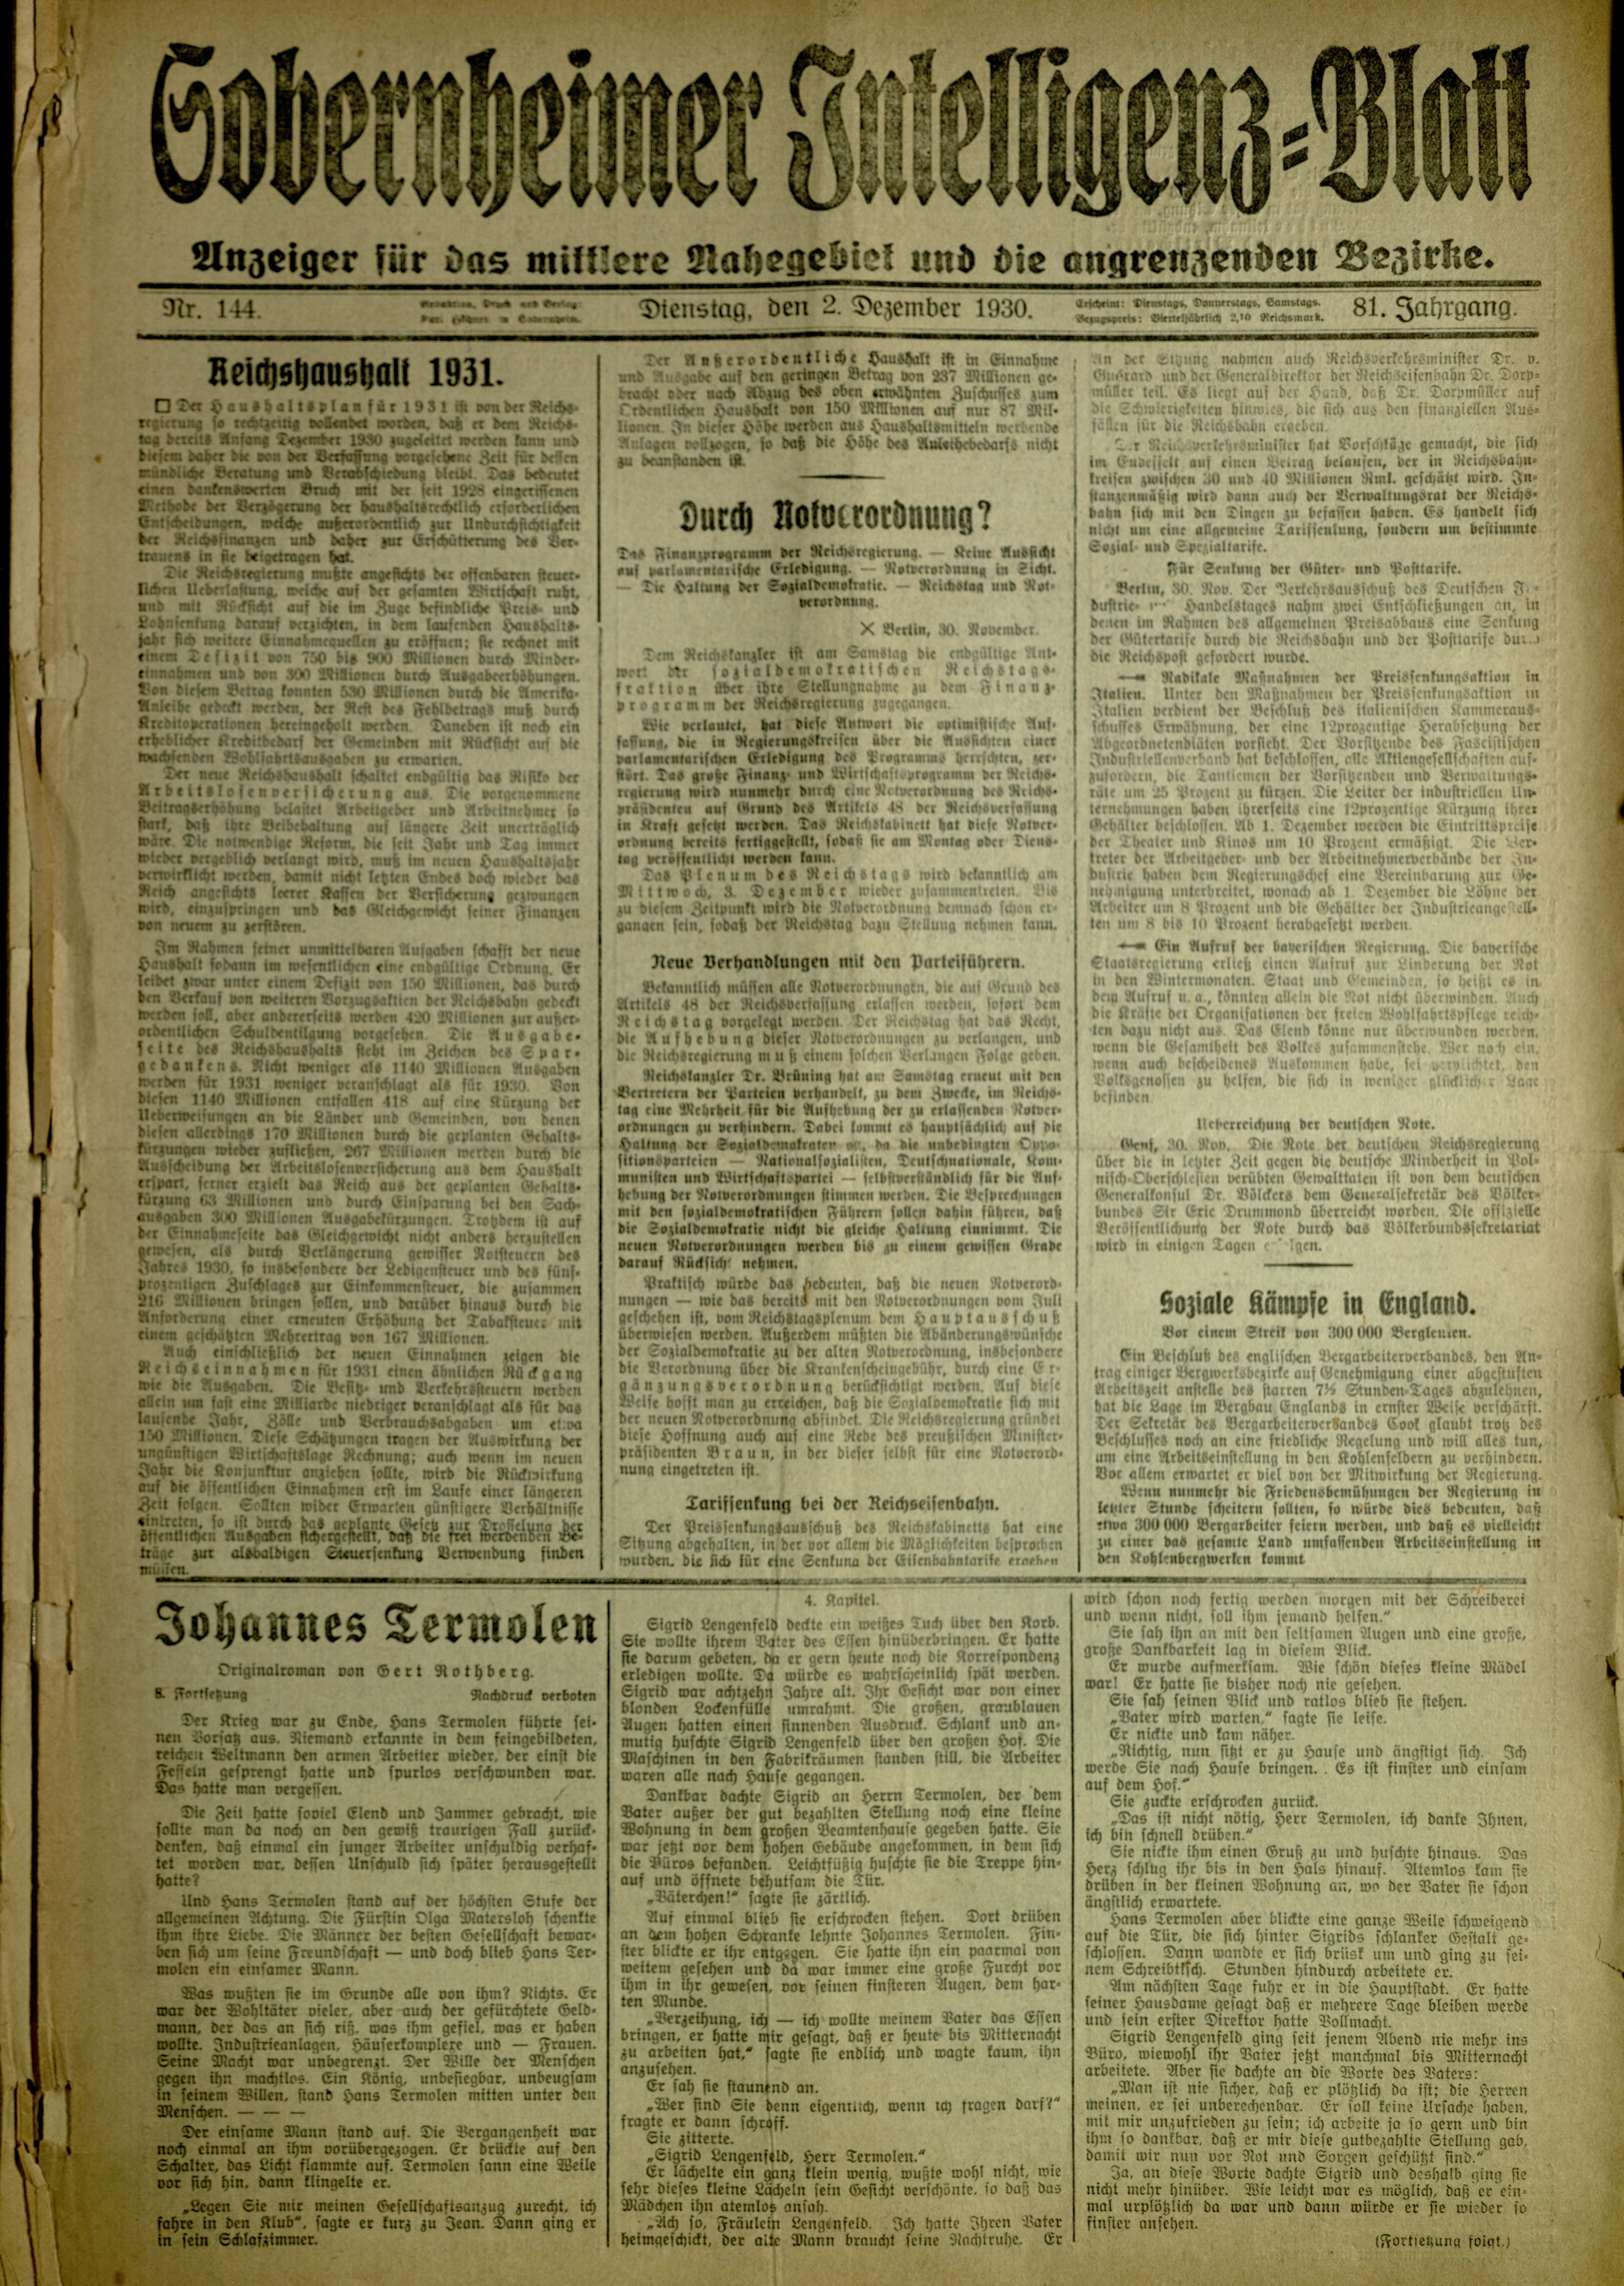 Zeitung: Sobernheimer Intelligenzblatt; Dezember 1930, Jg. 81 Nr. 144 (Heimatmuseum Bad Sobernheim CC BY-NC-SA)